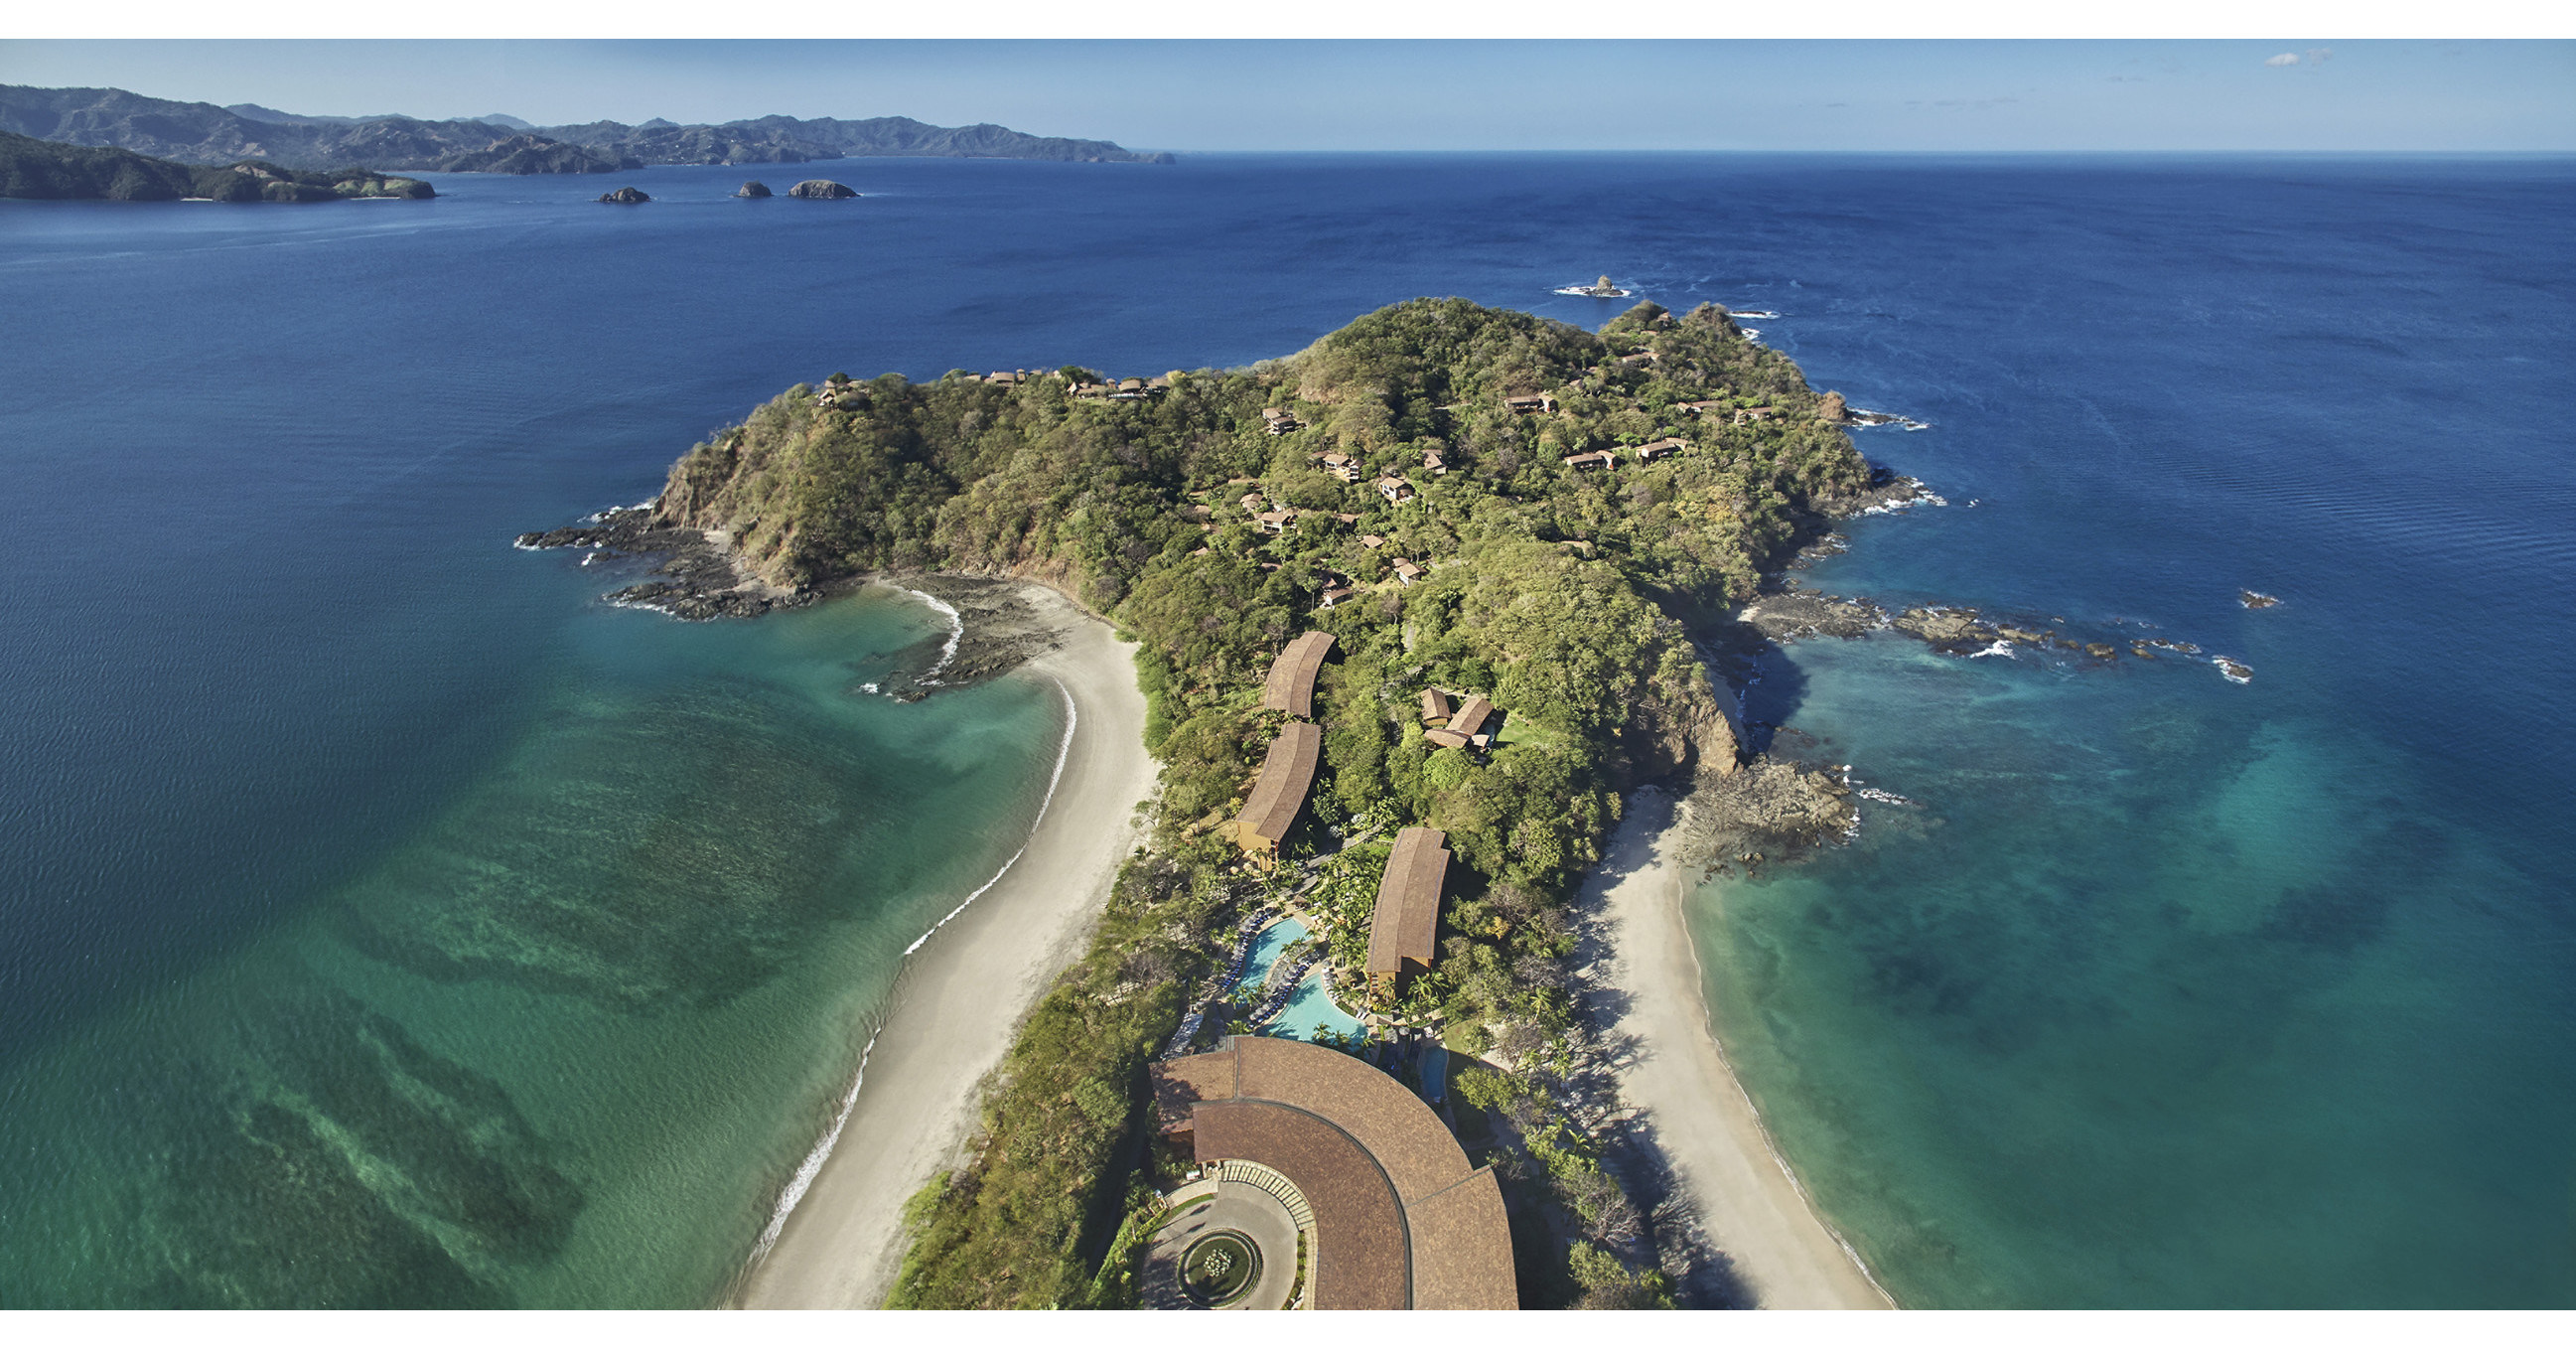 El Four Seasons Resort Costa Rica ha sido galardonado con una calificación de cinco estrellas por Forbes Travel Guide y tiene este honor exclusivamente en Costa Rica y Centroamérica.